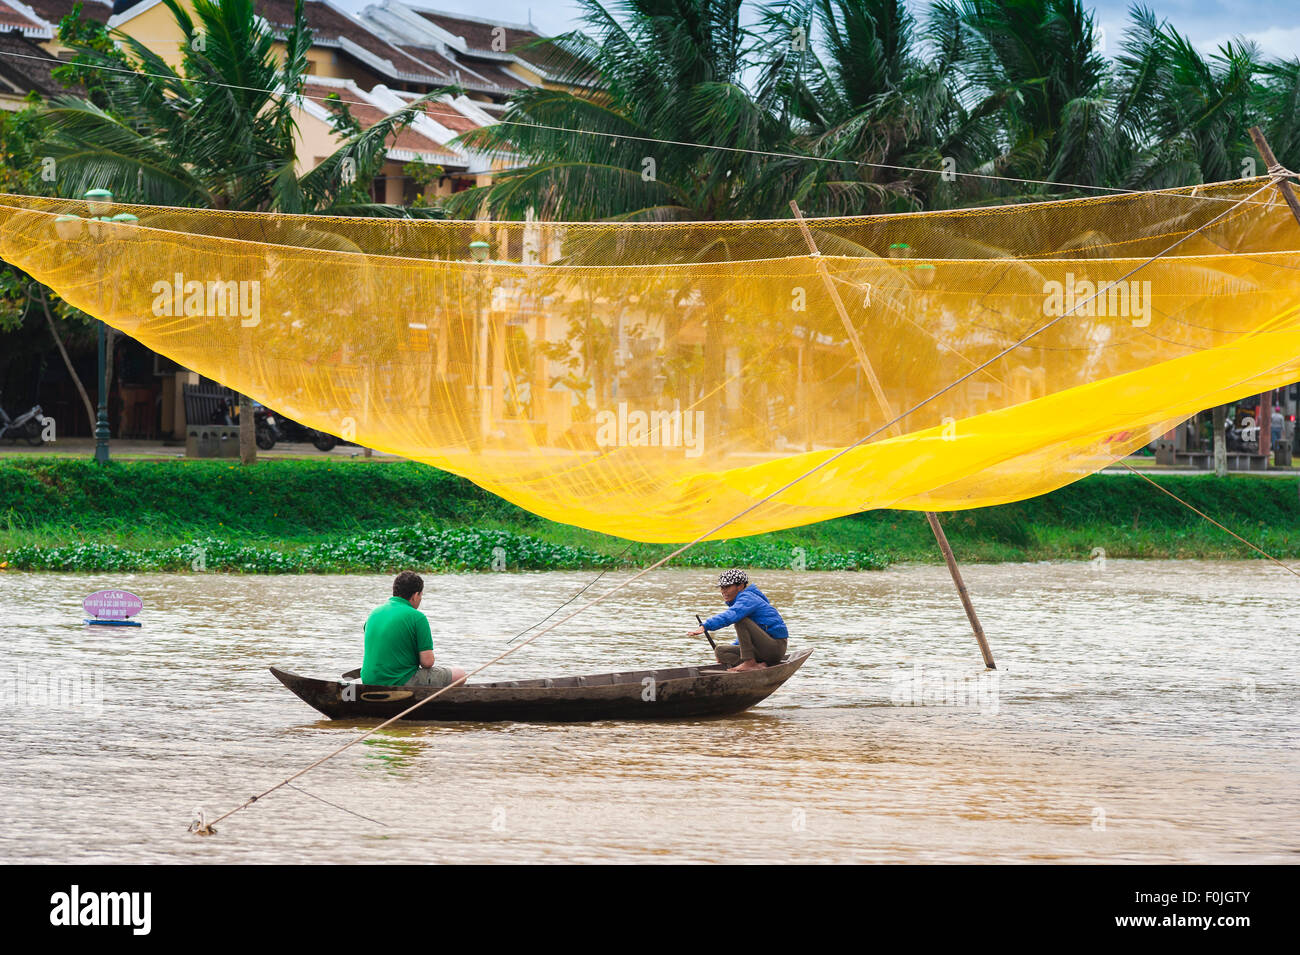 Hoi An River Boat, ein Tourist nimmt eine Bootsfahrt auf dem Thu Bon Fluss in Hoi An vorbei an einem riesigen gelben Fischernetz, Central Coast, Vietnam Stockfoto